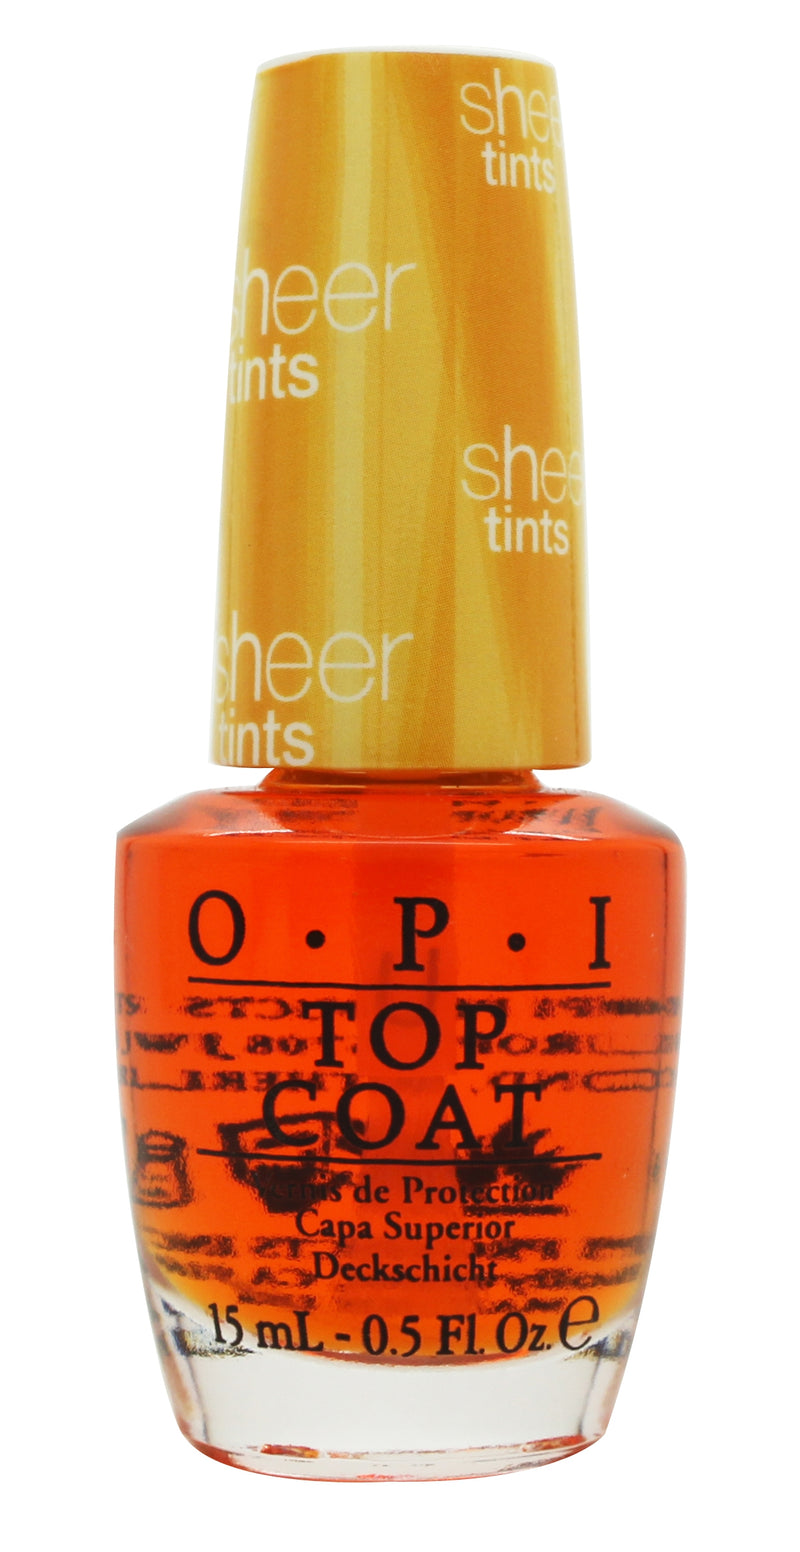 OPI Sheer Tints Top Coat 15ml - I&